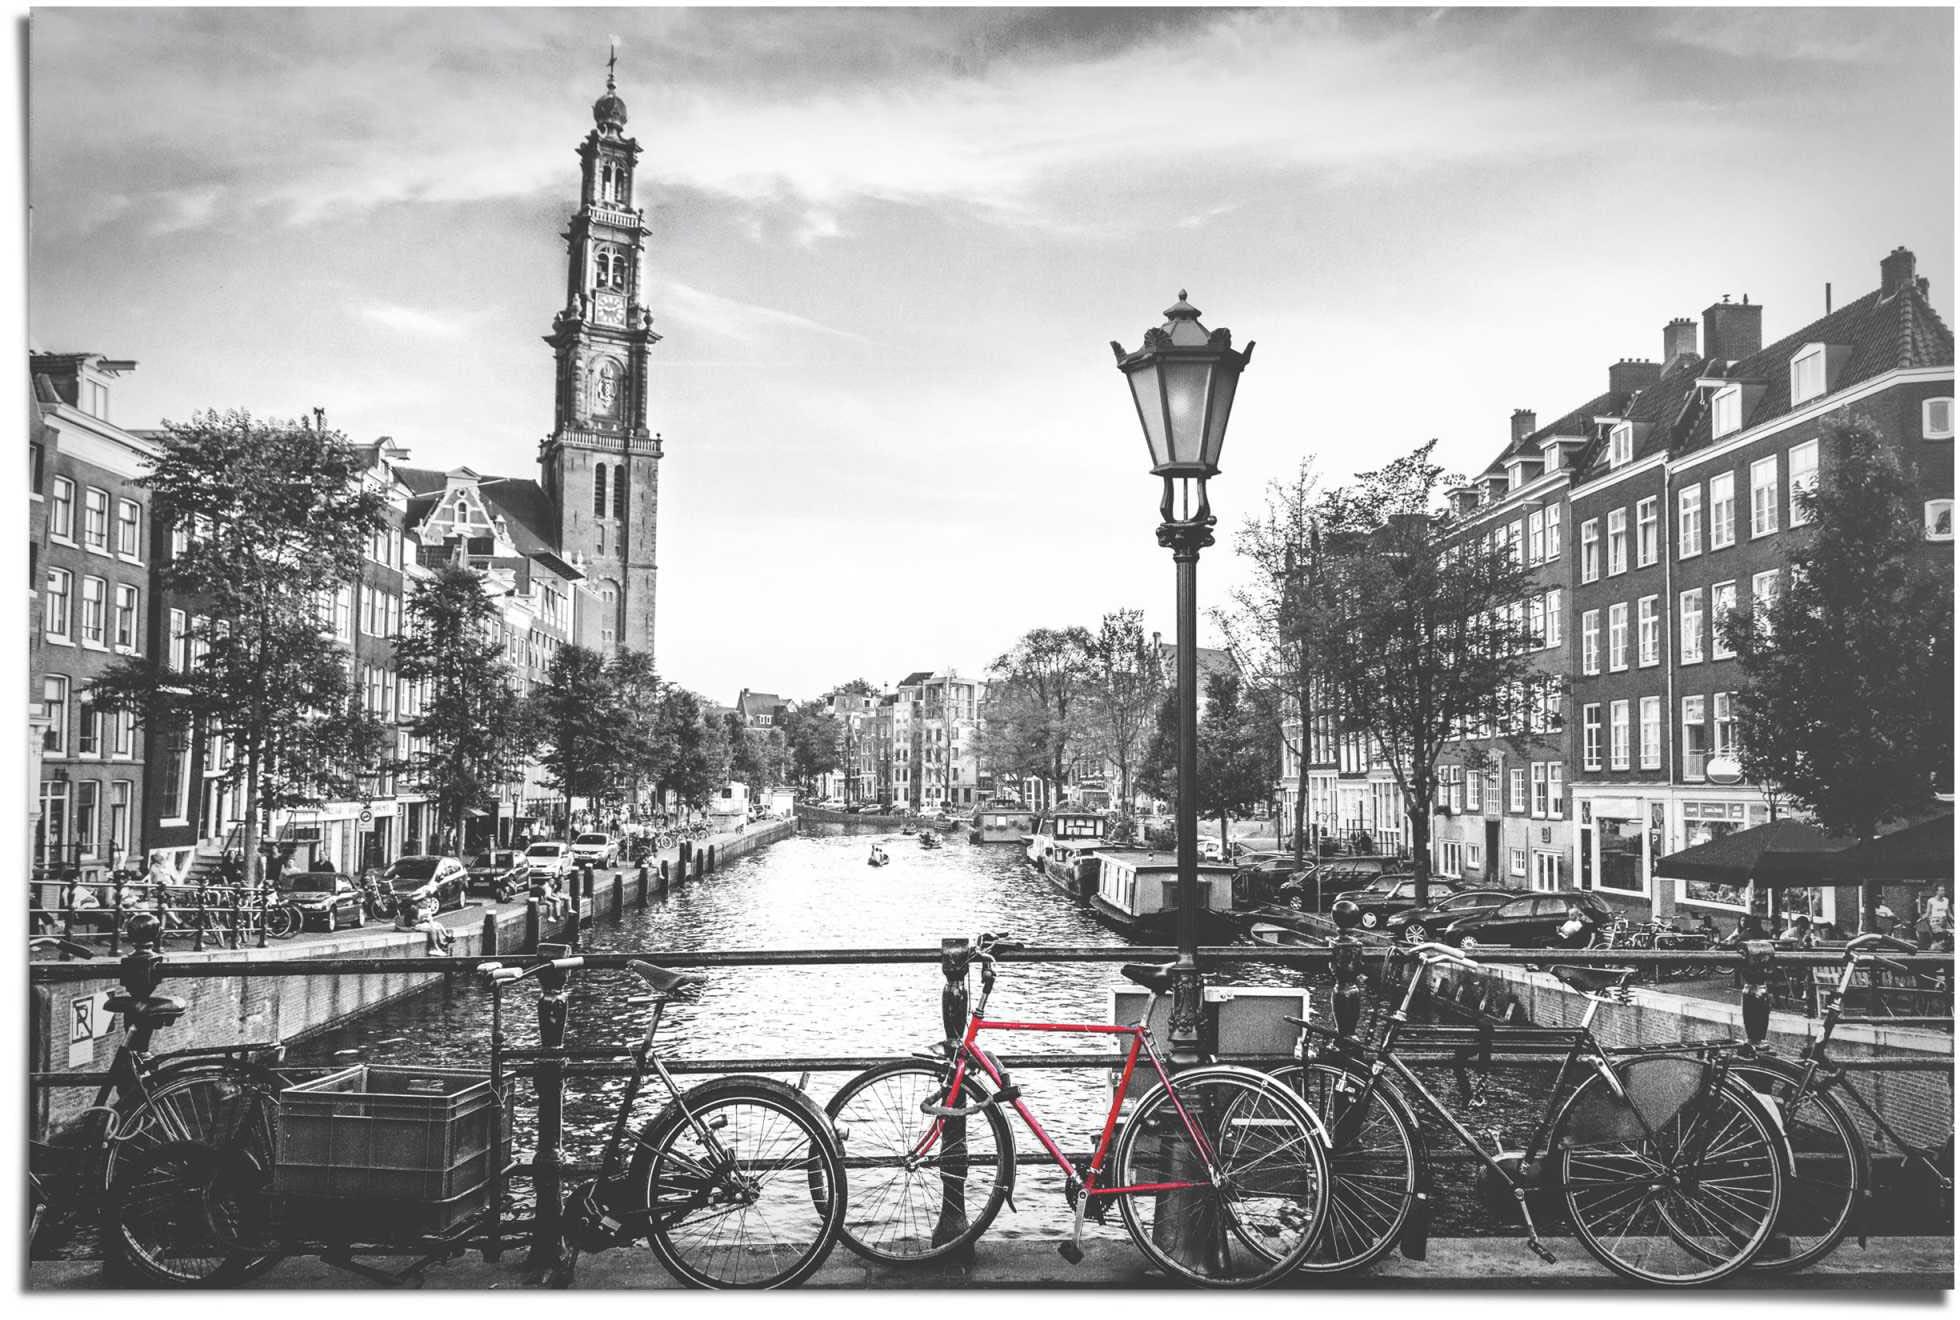 Fahrrad Poster von - Niederlande«, Reinders! bestellen »Die Brücke Shop im Amsterdam - Stadt St.) - Die Jelmoli-Online ❤ Grachten (1